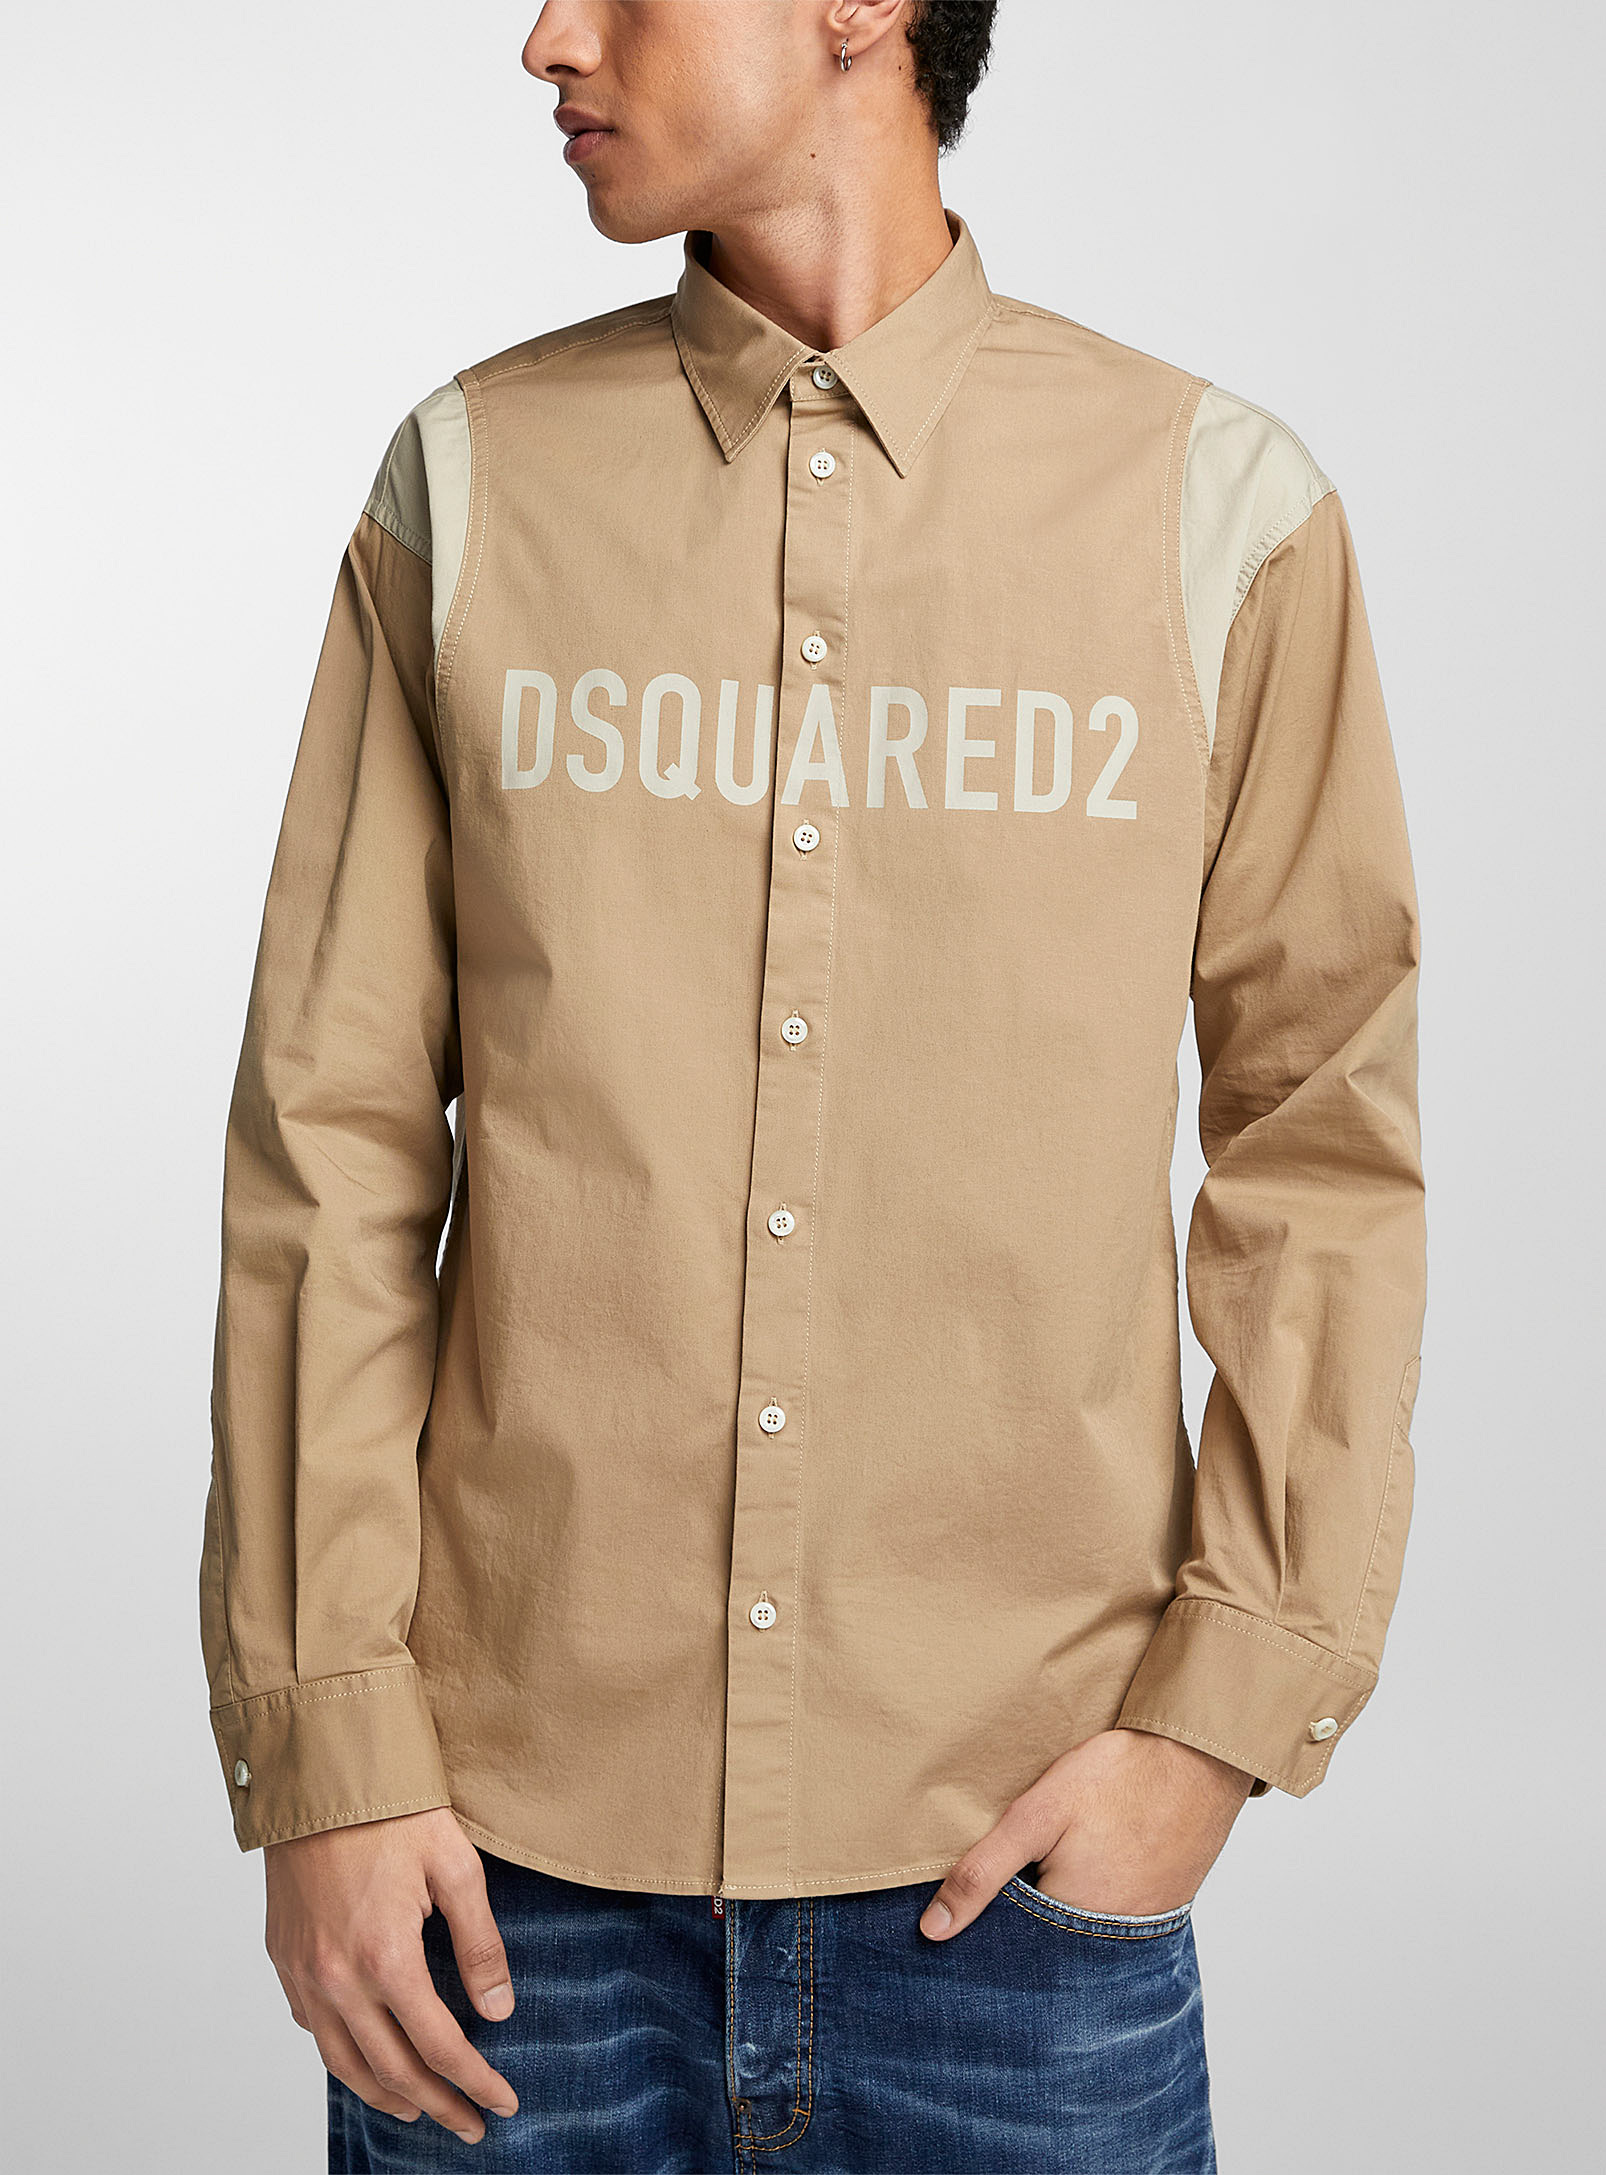 Dsquared2 - Men's Tone-on-tone logo shirt